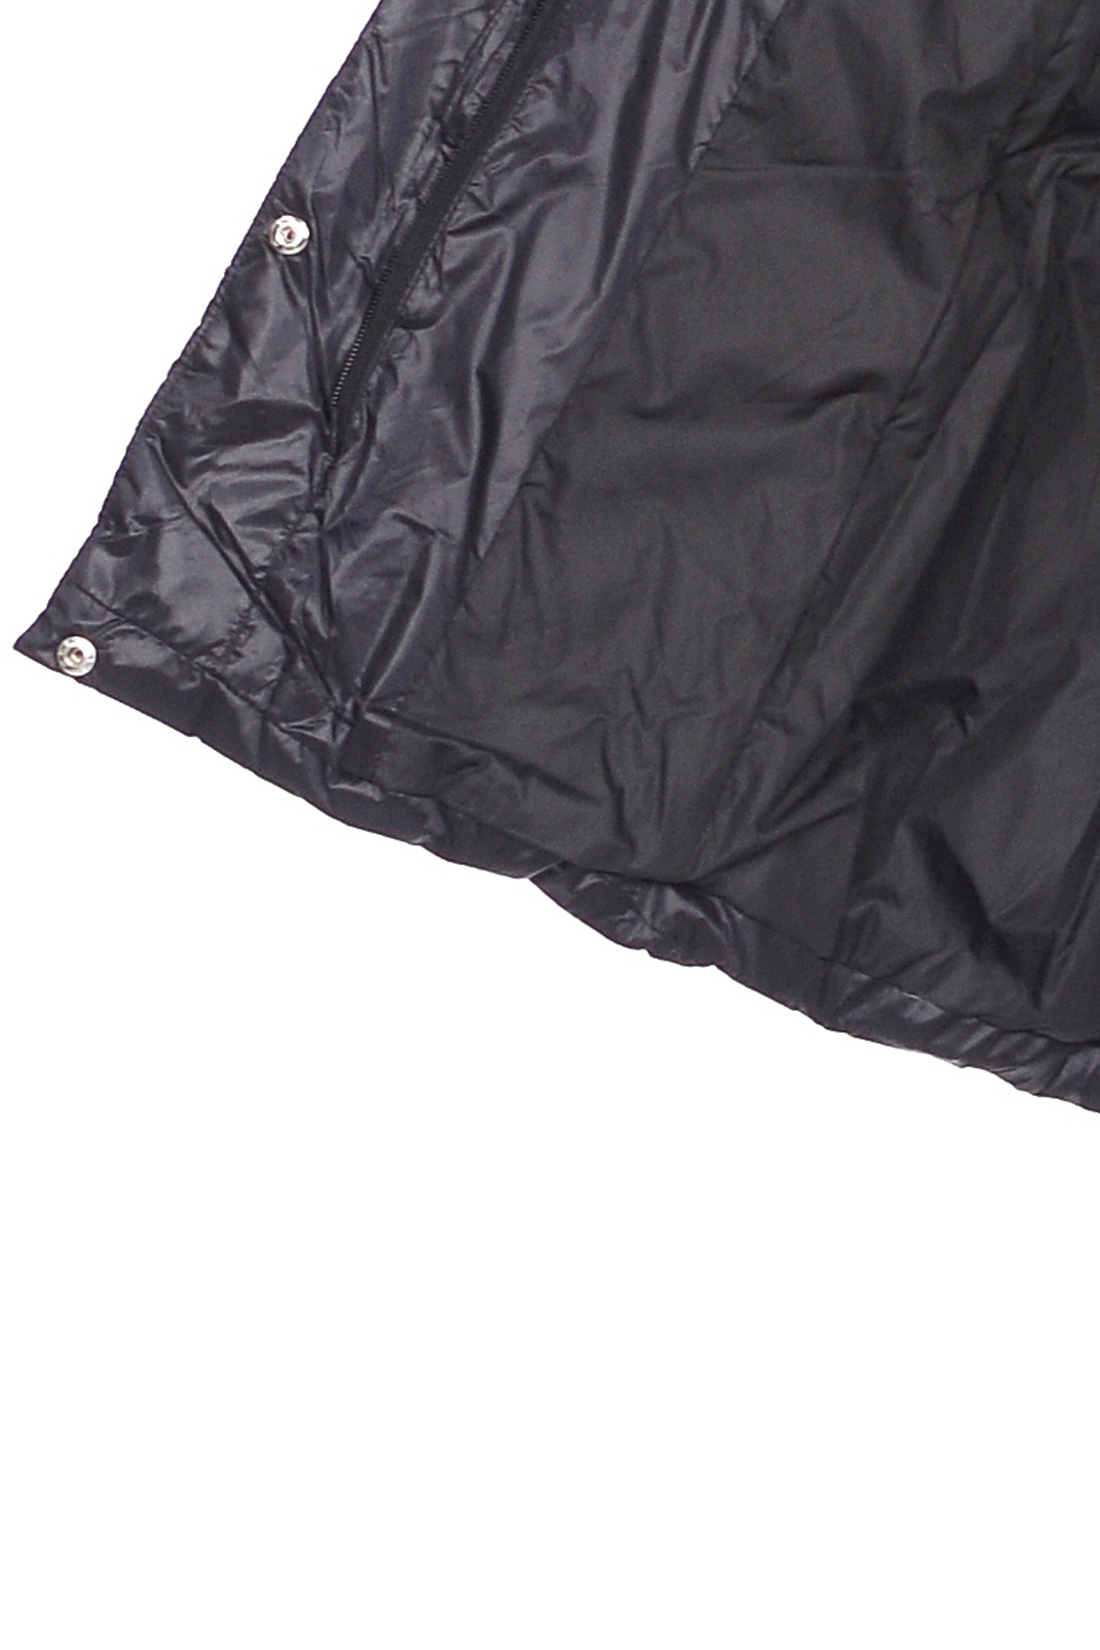 Пуховик со съёмным воротником и бантом (арт. baon B008517), размер S, цвет черный Пуховик со съёмным воротником и бантом (арт. baon B008517) - фото 3